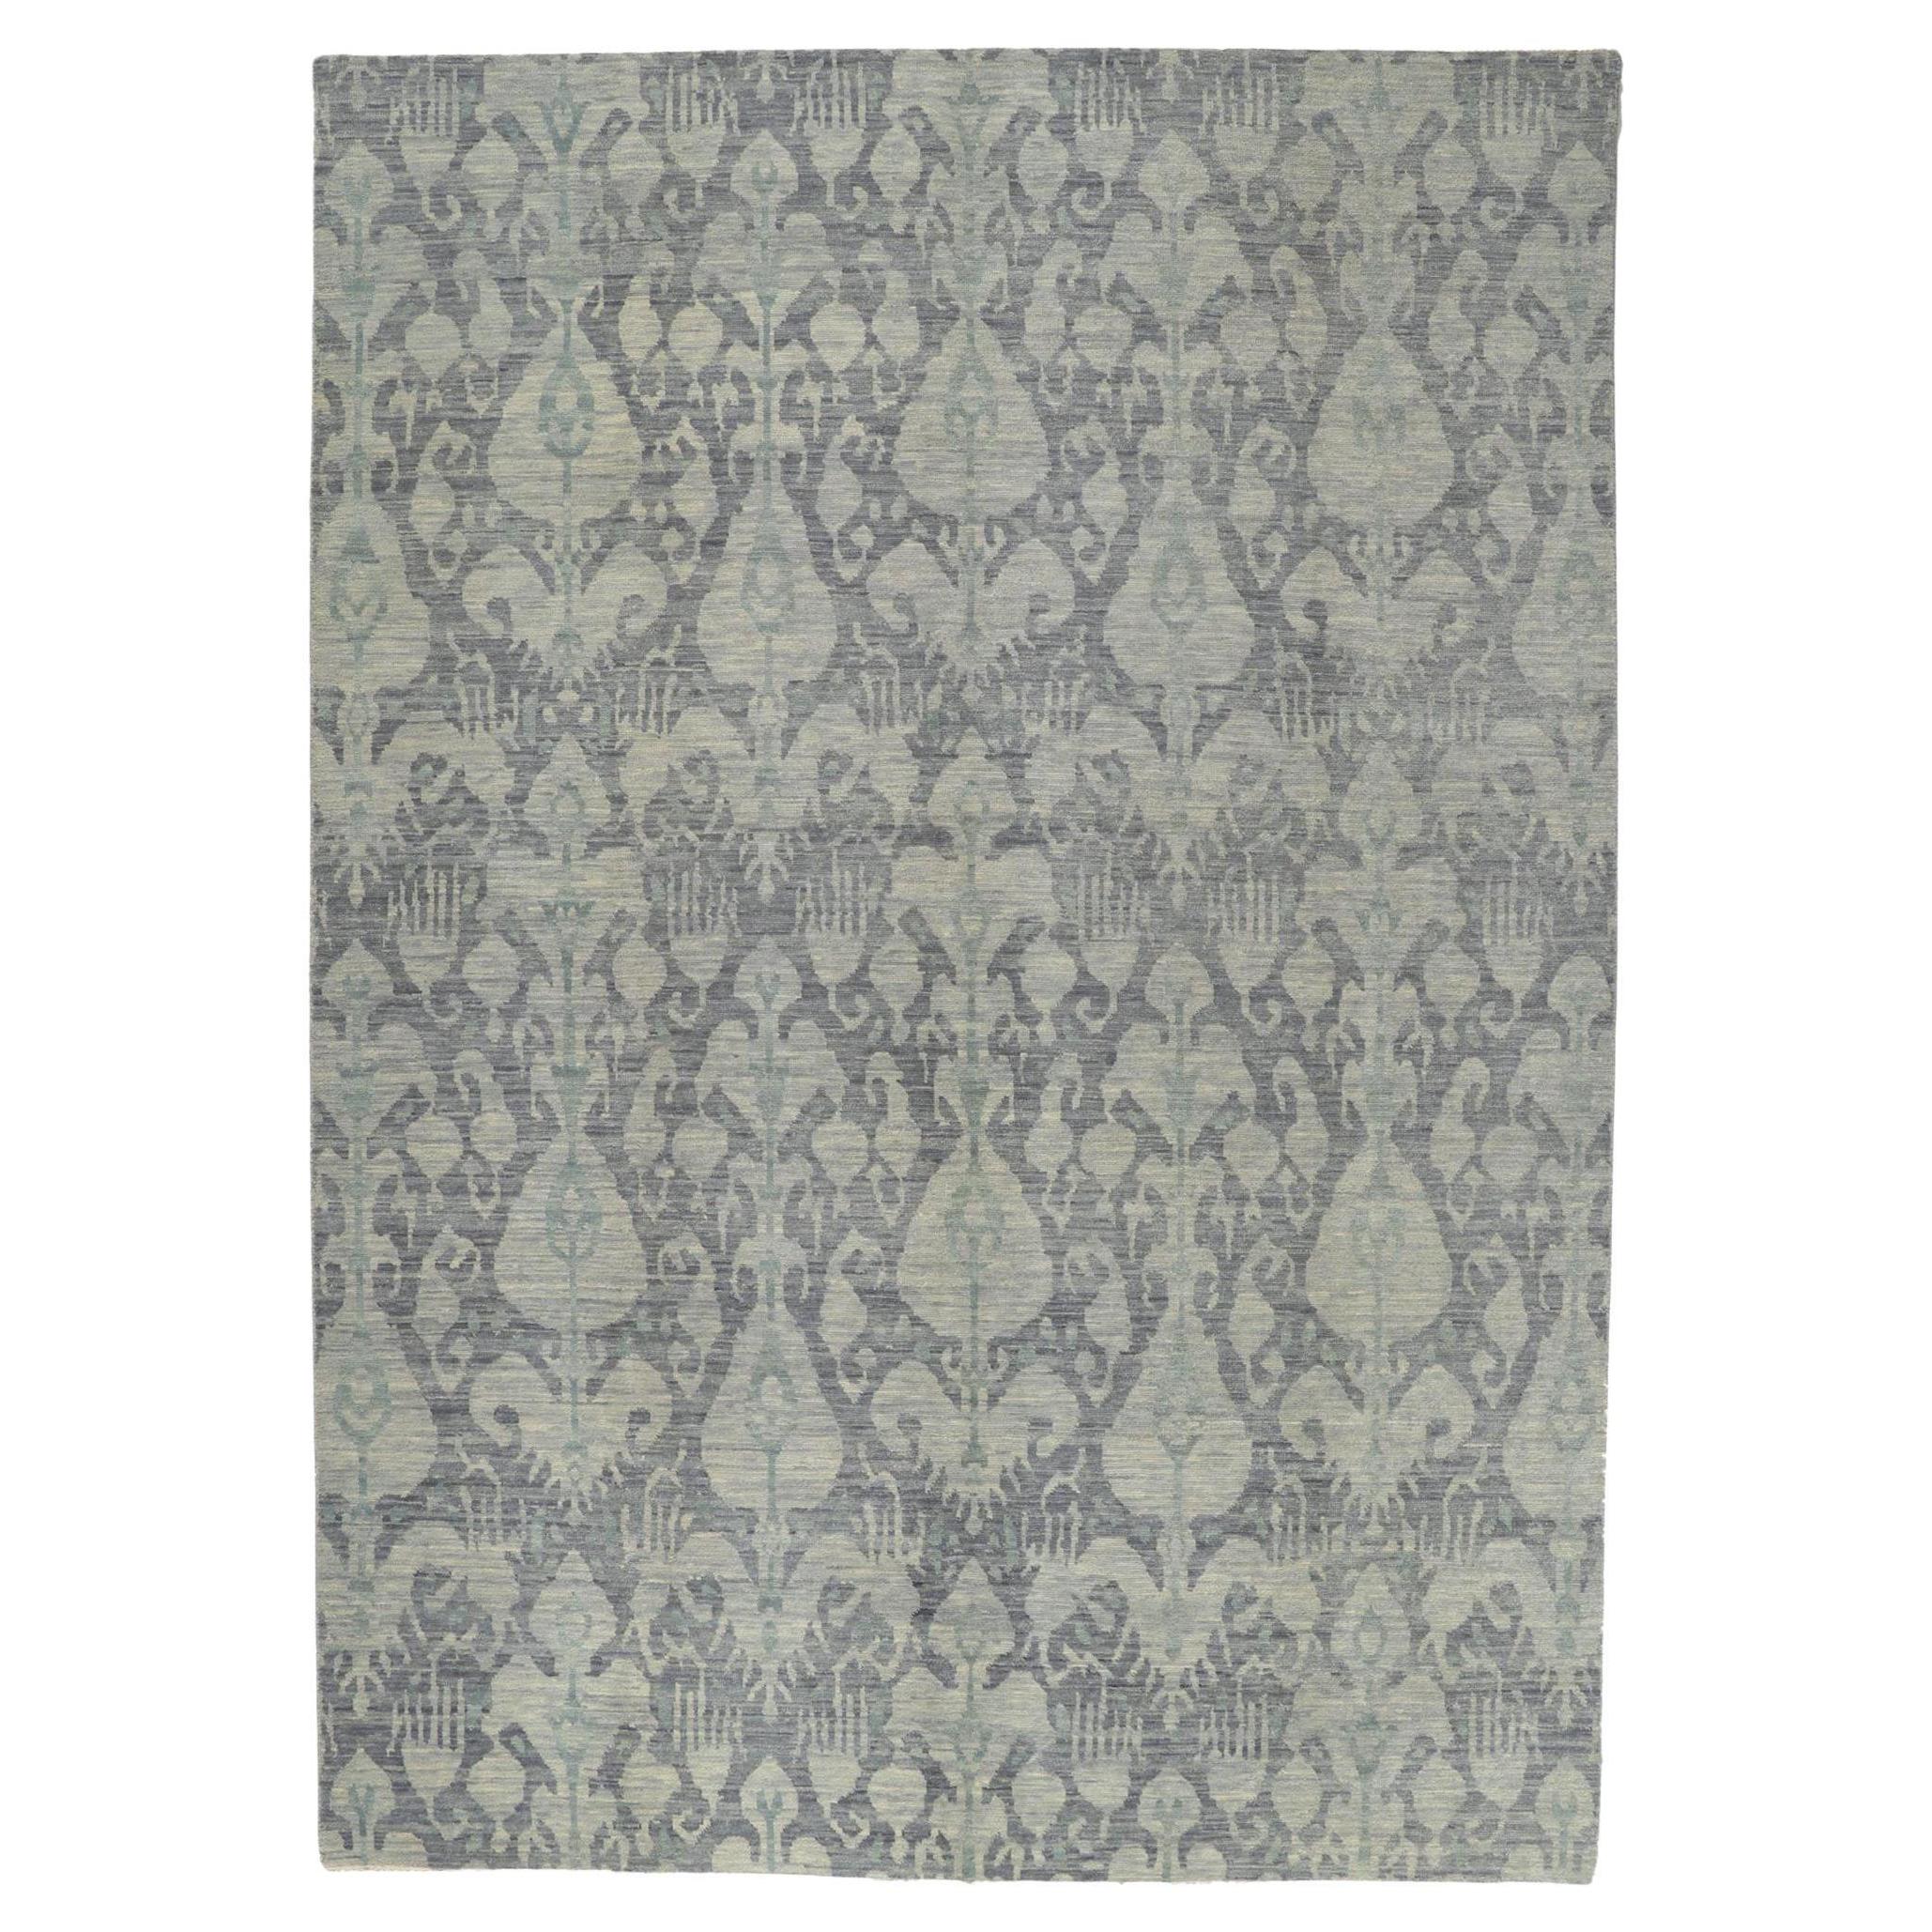 Nouveau tapis Ikat transitionnel avec des couleurs grises et bleues aux tons terreux